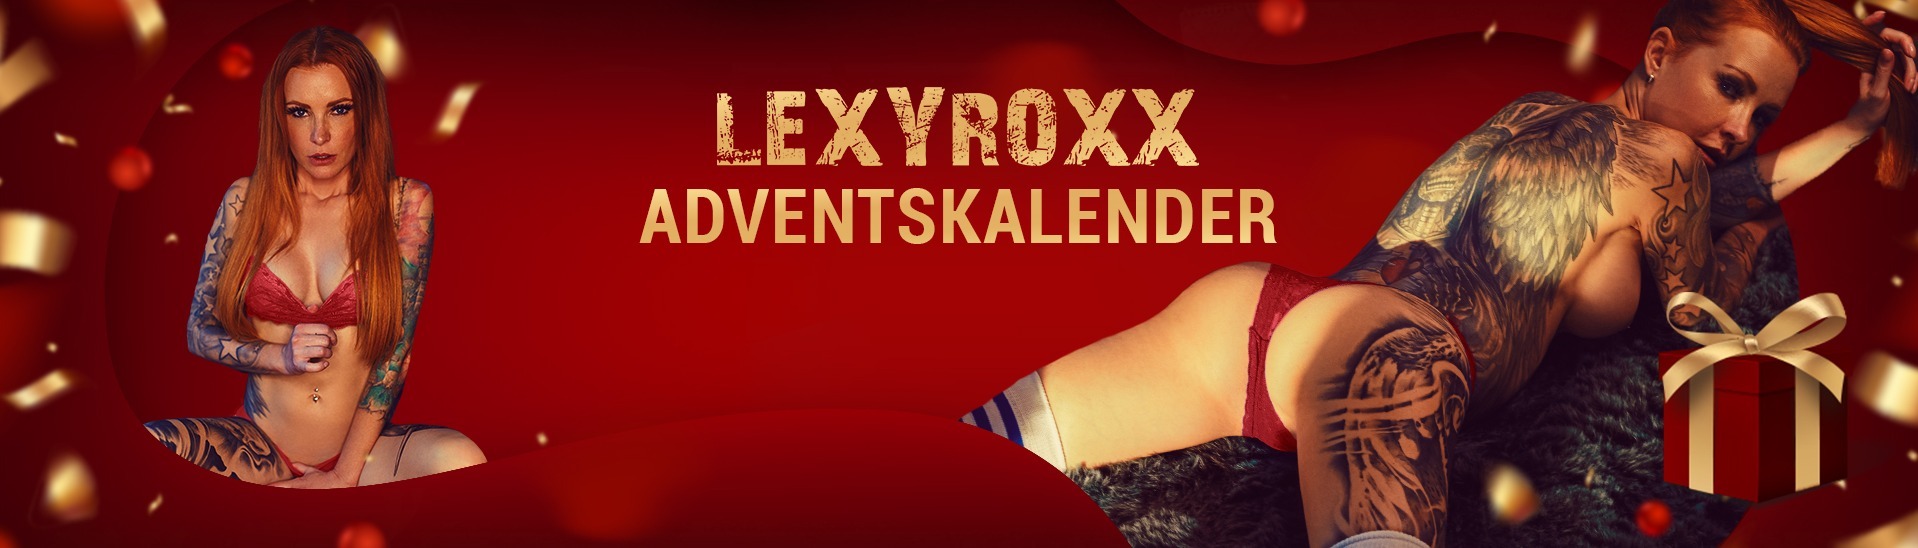 Lexy roxx buchen